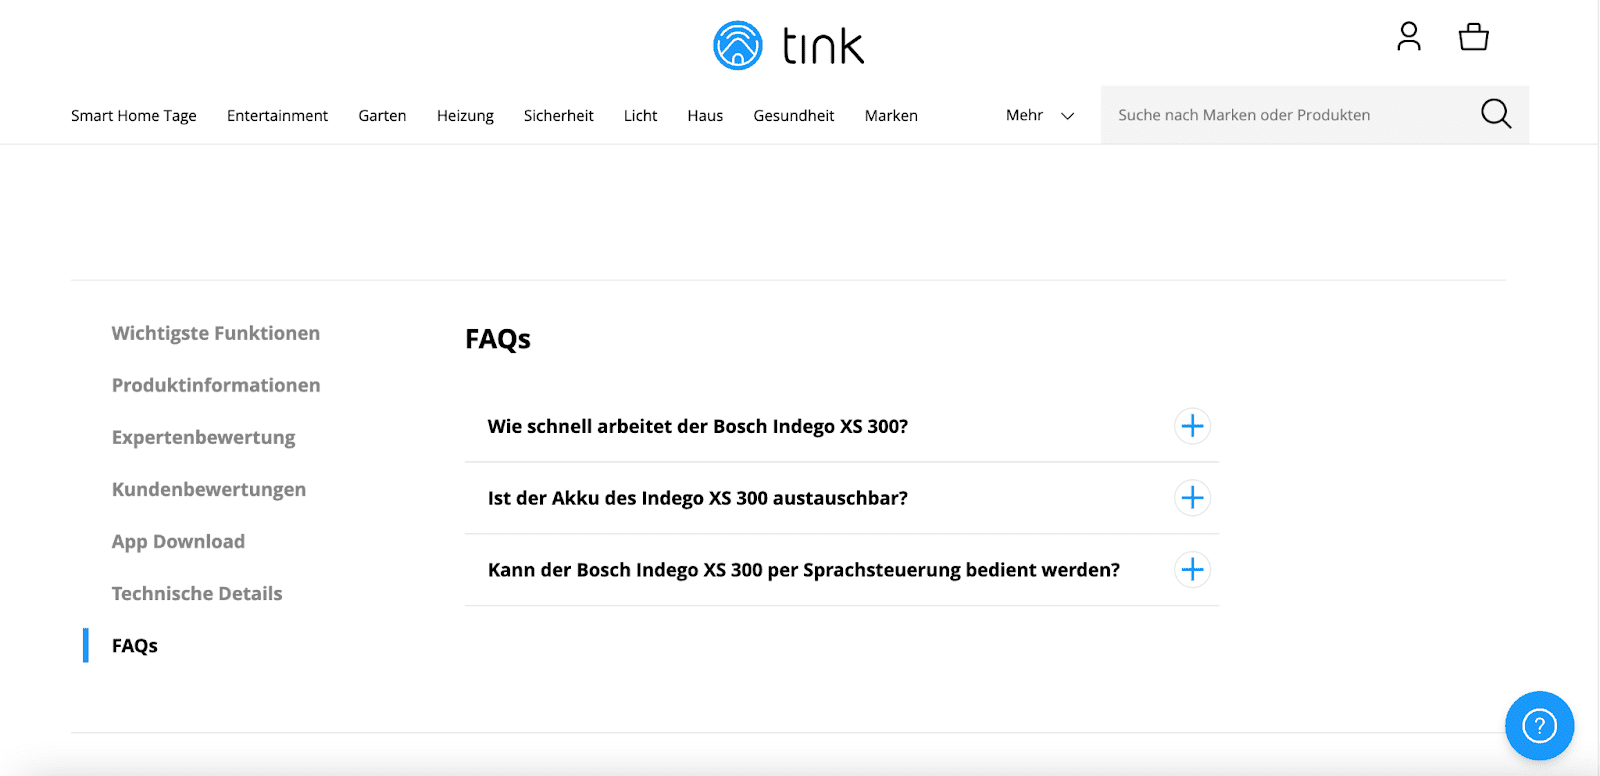 FAQs auf einer Produktdetailseite zu einem Mähroboter von tink.de